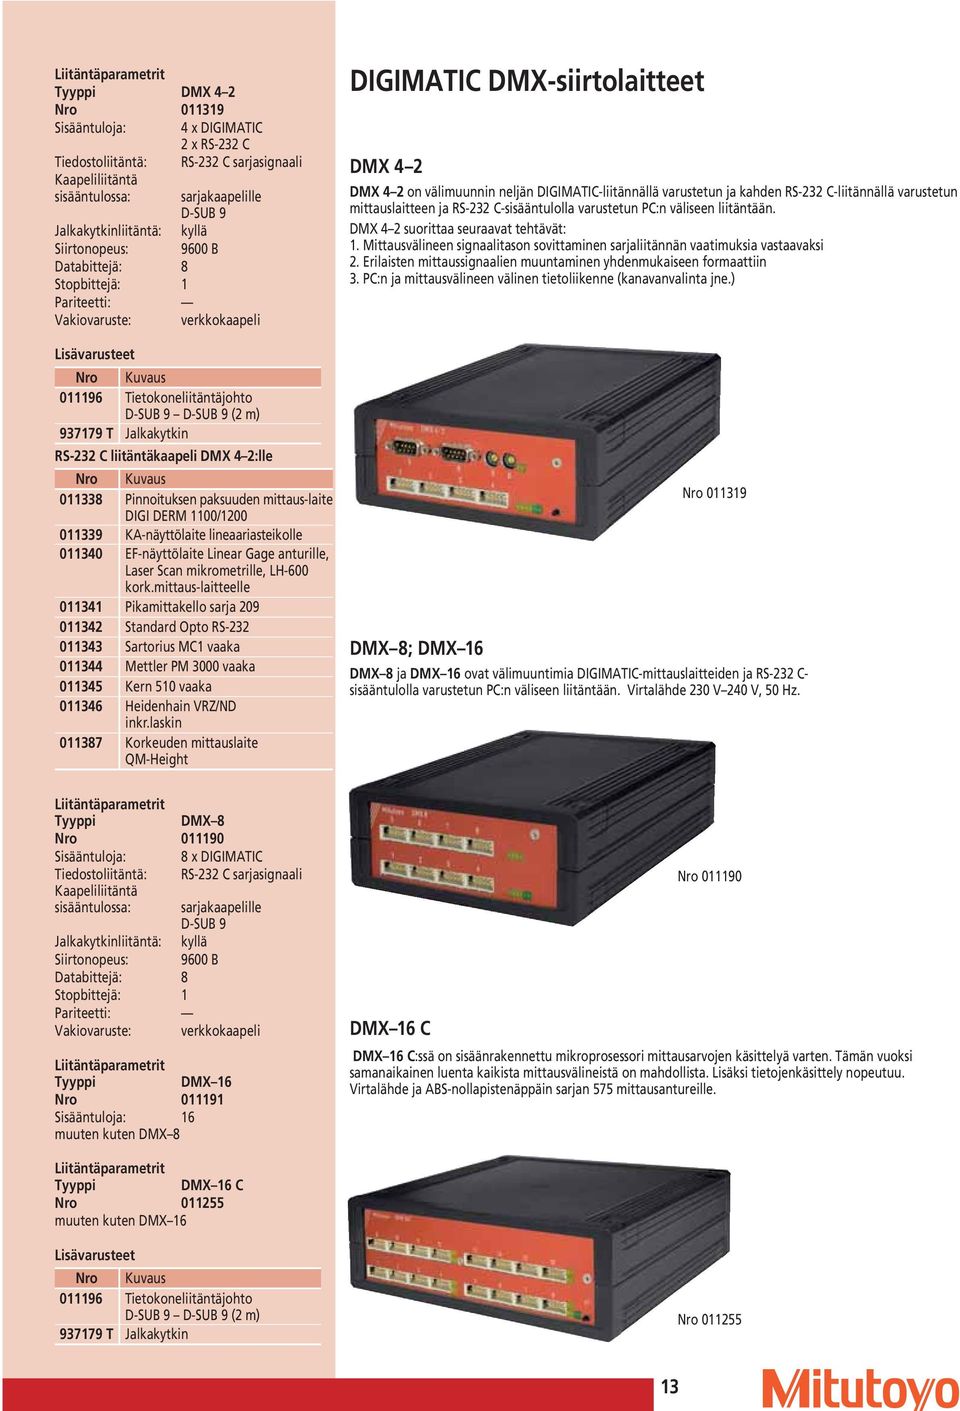 011339 KA-näyttölaite lineaariasteikolle 011340 EF-näyttölaite Linear Gage anturille, Laser Scan mikrometrille, LH-600 kork.